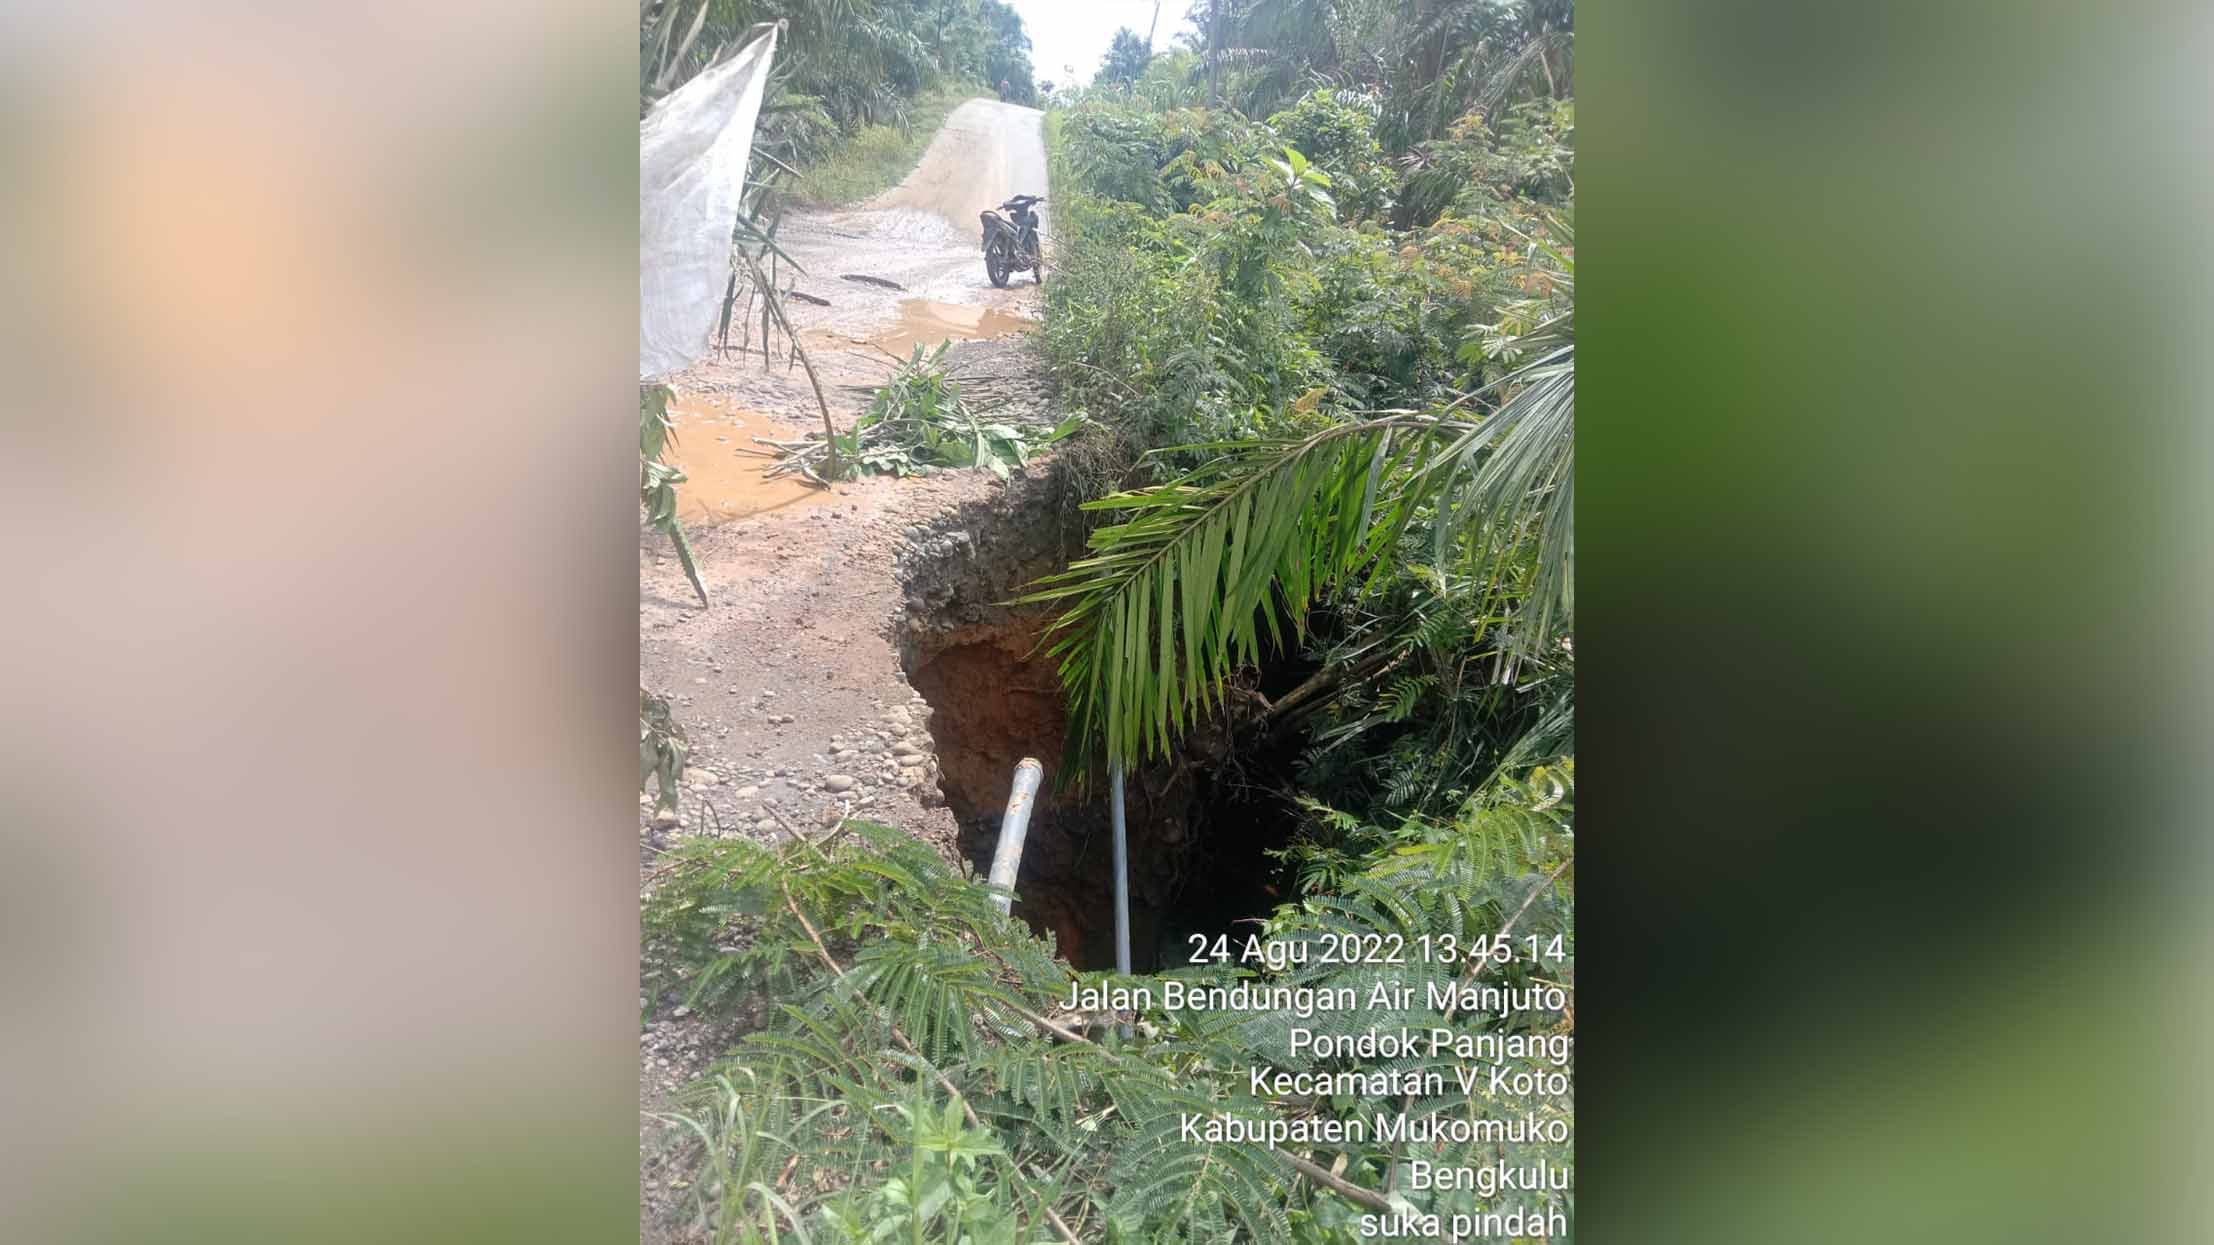 Hati-hati Jalan Provinsi di Desa Pondok Panjang Amblas